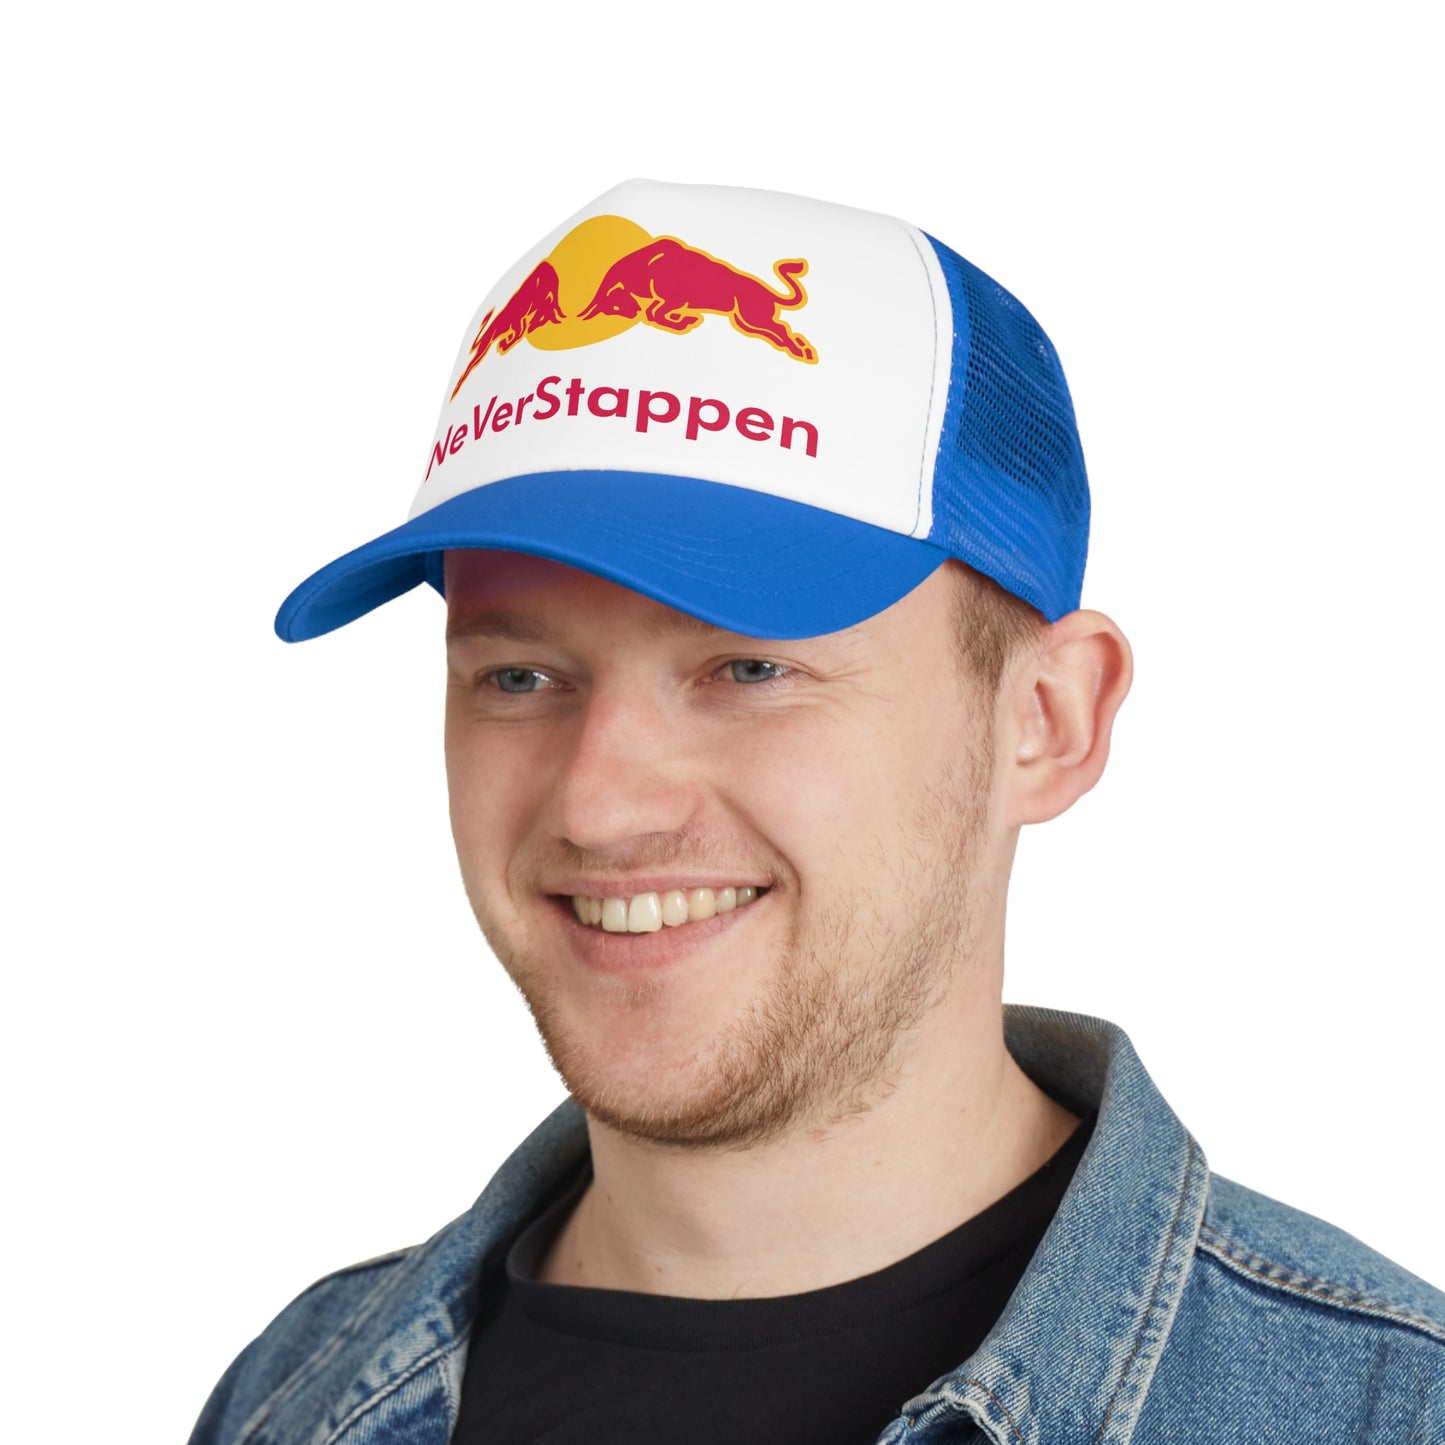 NeVerStappen Red Bull Formula 1 F1 Max Verstappen Mesh Cap Next Cult Brand F1, Max Verstappen, Red Bull